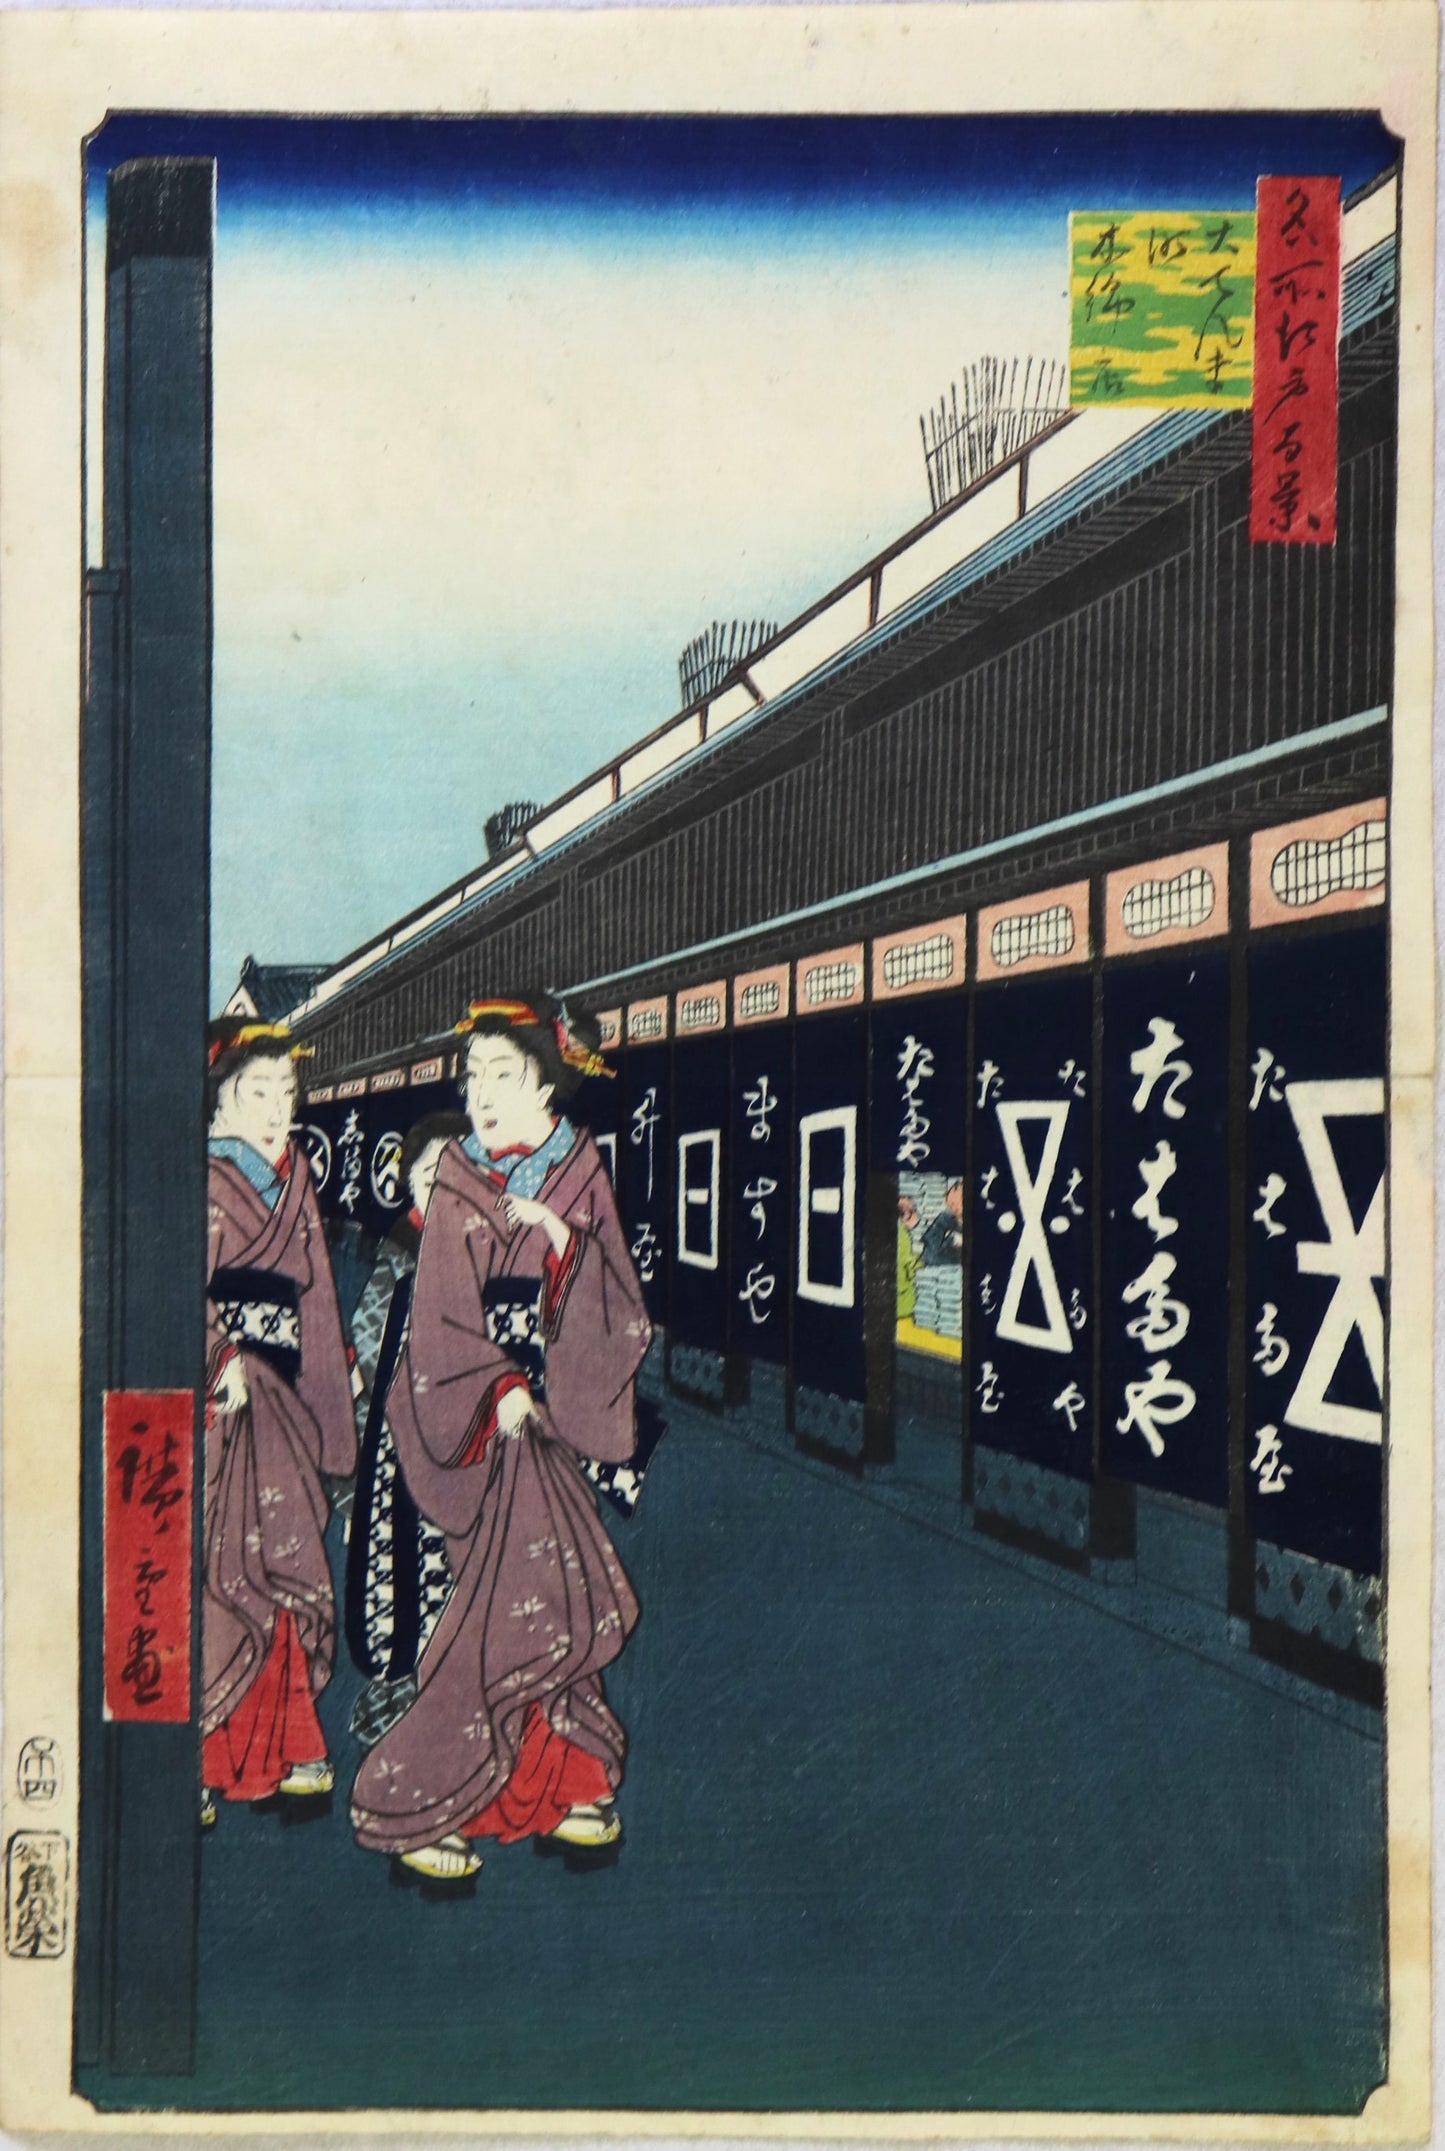 Views of Cotton Goods lane, Odenma-cho from the series " 100 Famous Views of Edo "by Hiroshige / Vue des boutiques de biens de coton à Odenma-cho de la série " Cent célèbres vues d'Edo" par Hiroshige (1858)